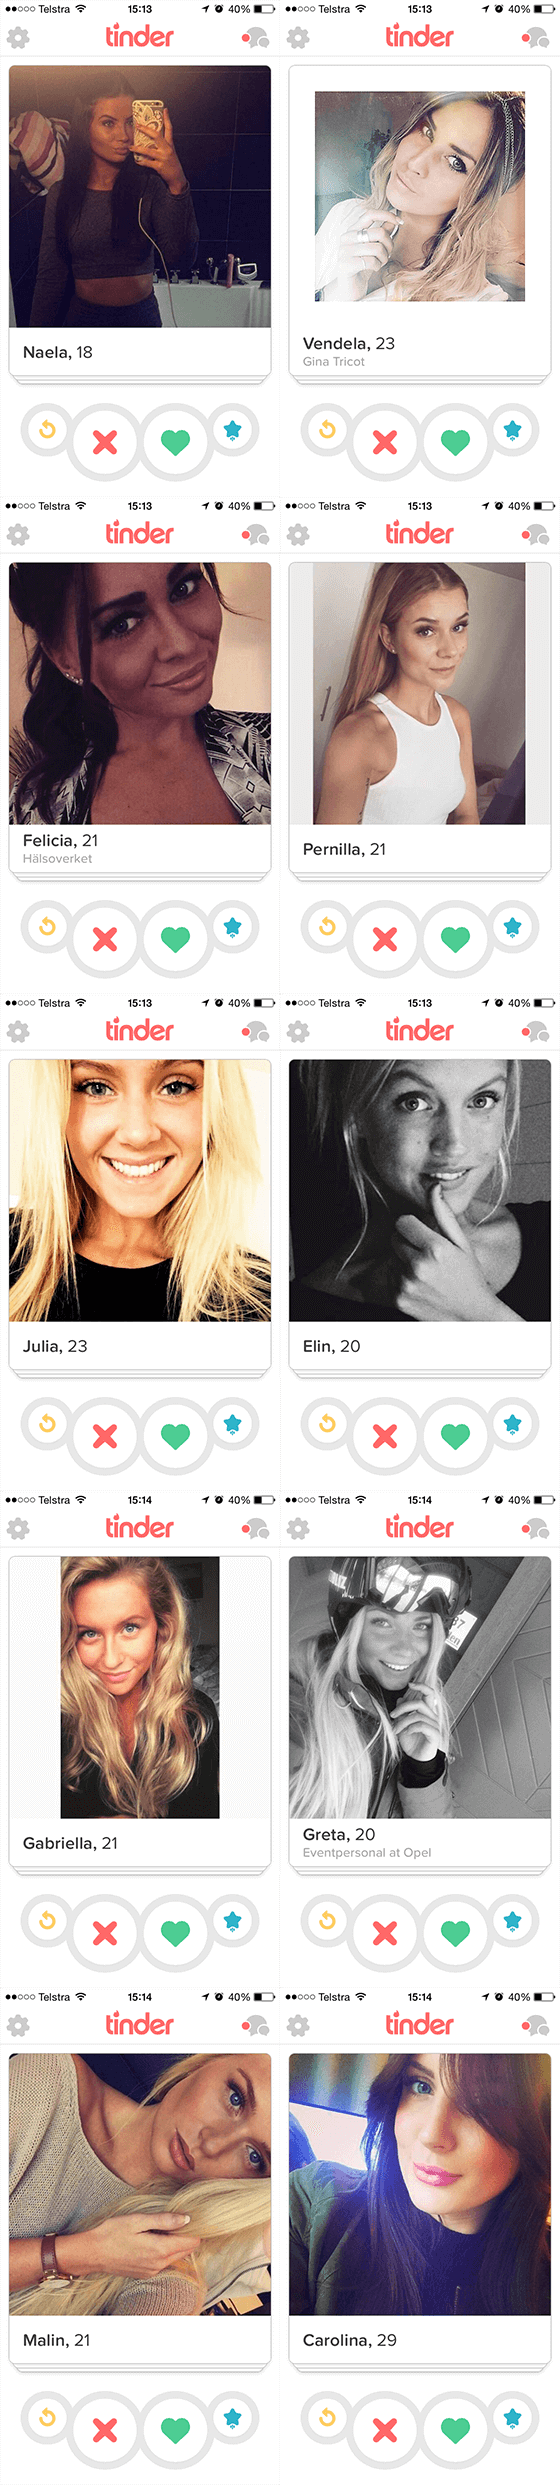 Hottest-Popular-Tinder-women-in-Stockholm-Sweden